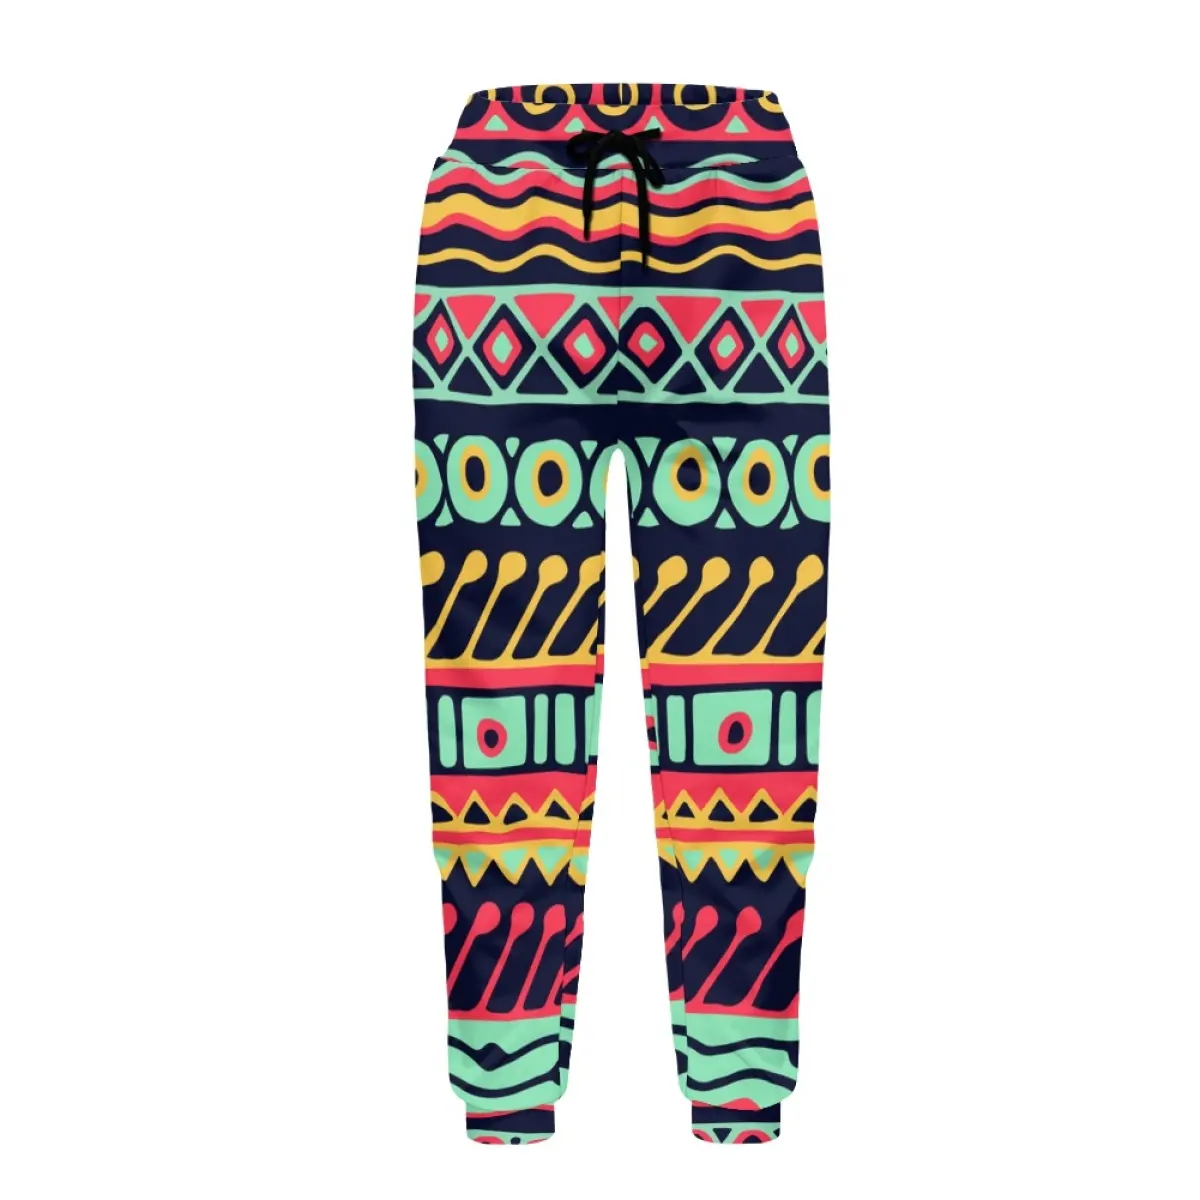 Outono e Inverno Calças Casuais para Homens Oversized Trendy Printed Pant Padrão Tribal Africano Sweatpants Jogging Esporte Sportswear